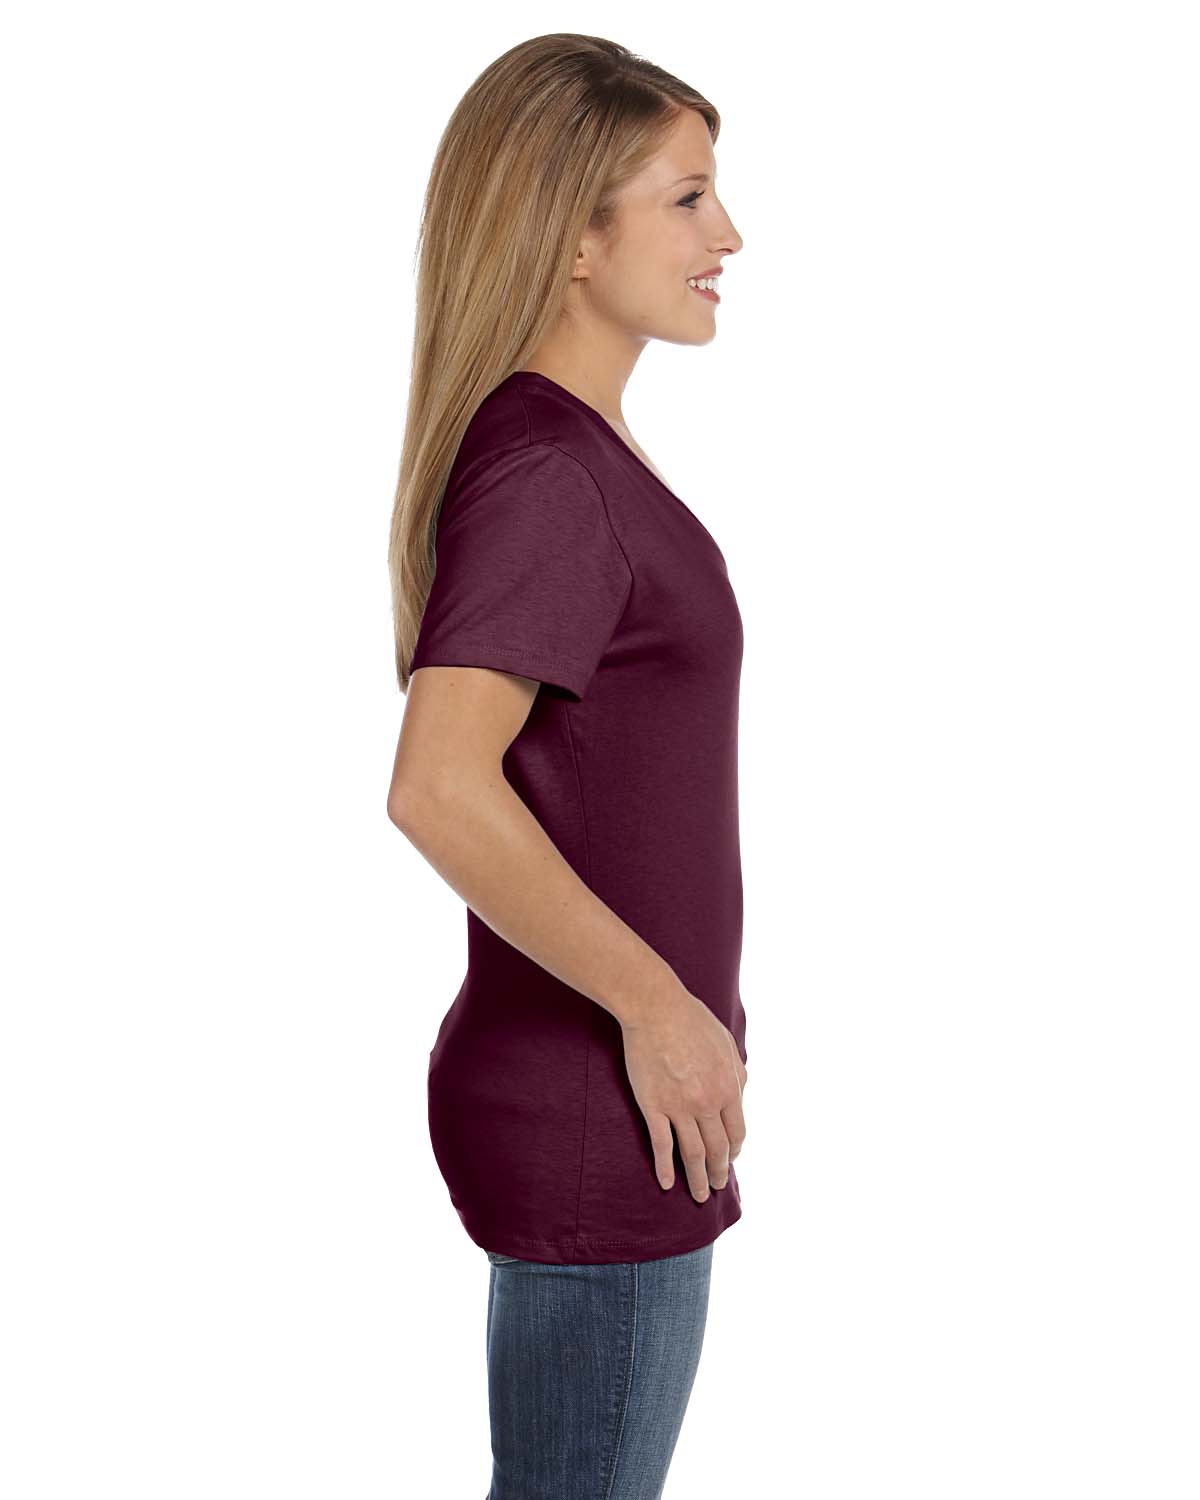 Hanes Women's Nano-T V-Neck T-Shirt - image 2 of 2